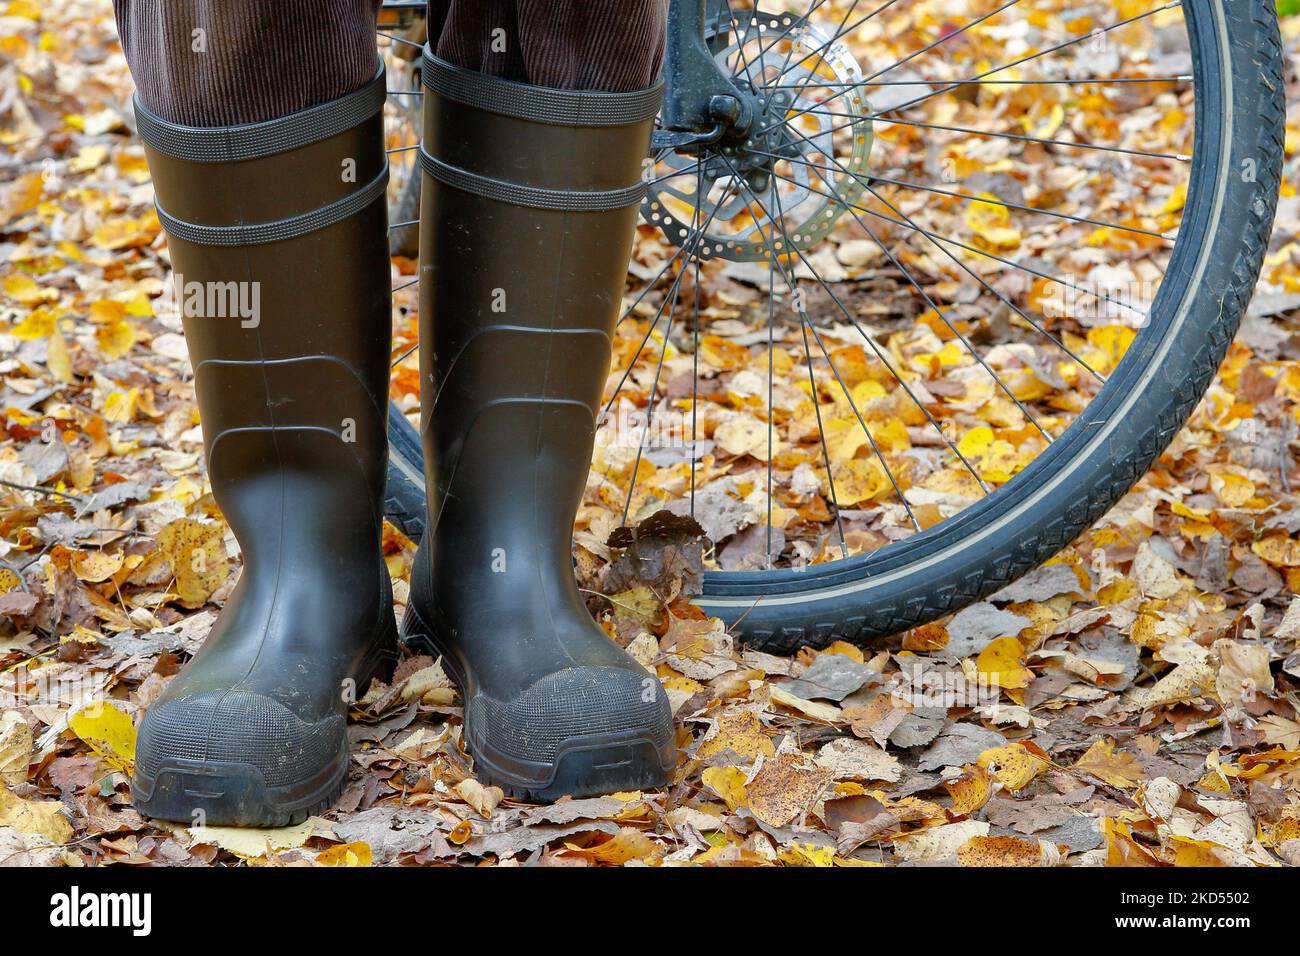 Mit trockenen Füßen auf dem Fahrrad durch den Herbst. Radfahrer steht in Gummistiefeln in farbenfrohem Laub vor einem Fahrradreifen. Stockfoto